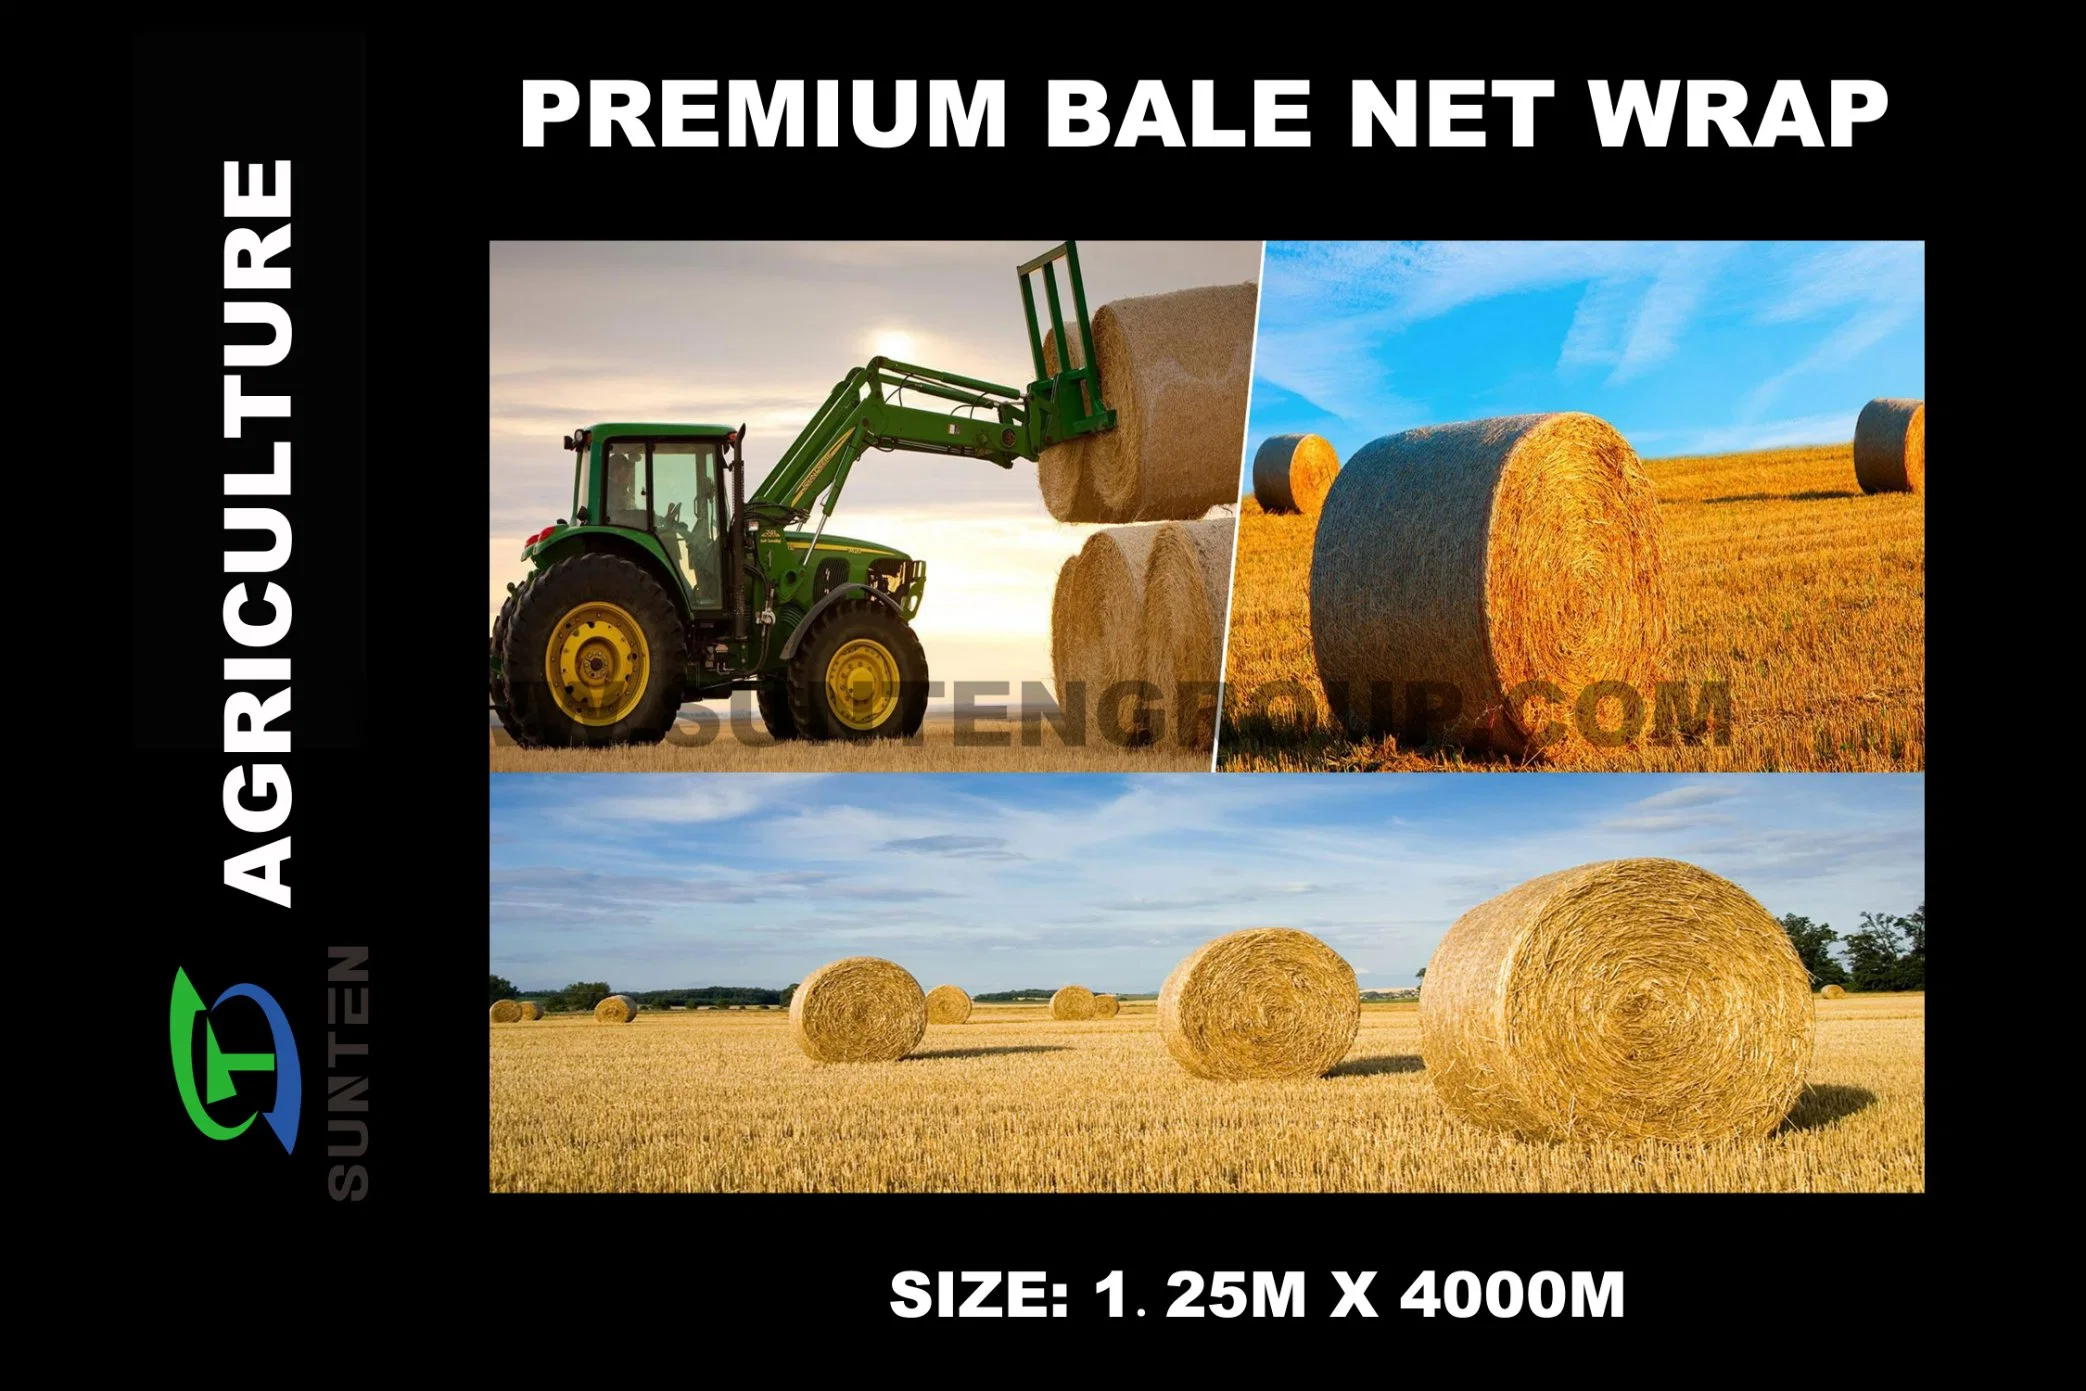 Kunststoff / Landwirtschaft weiß / bunt Verpackung Runde Silage / Ballen / Gras Heuballe Wrap Net für Bauernhof